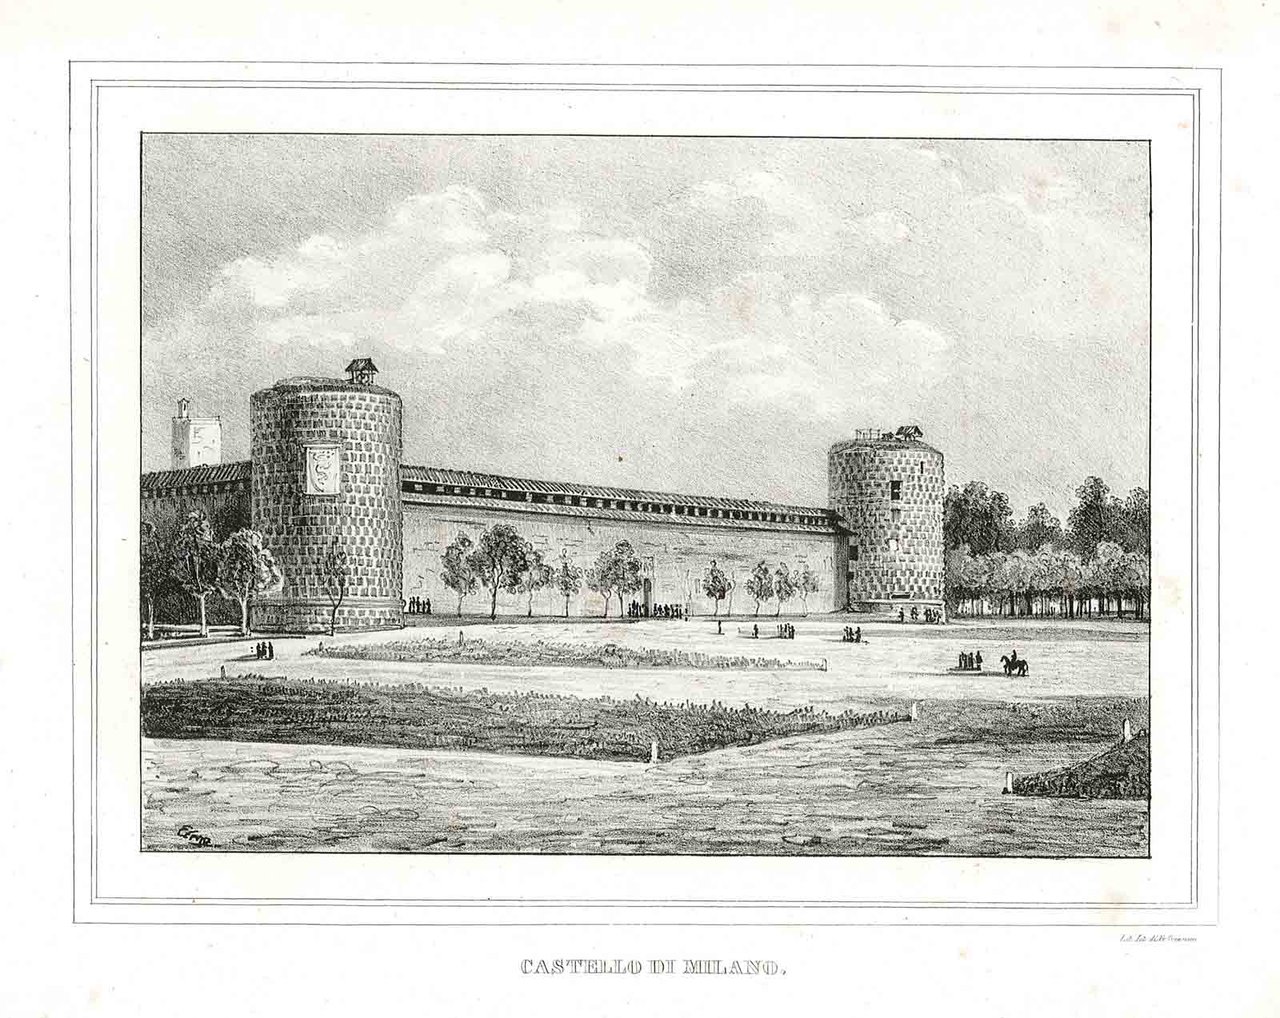 Castello di Milano